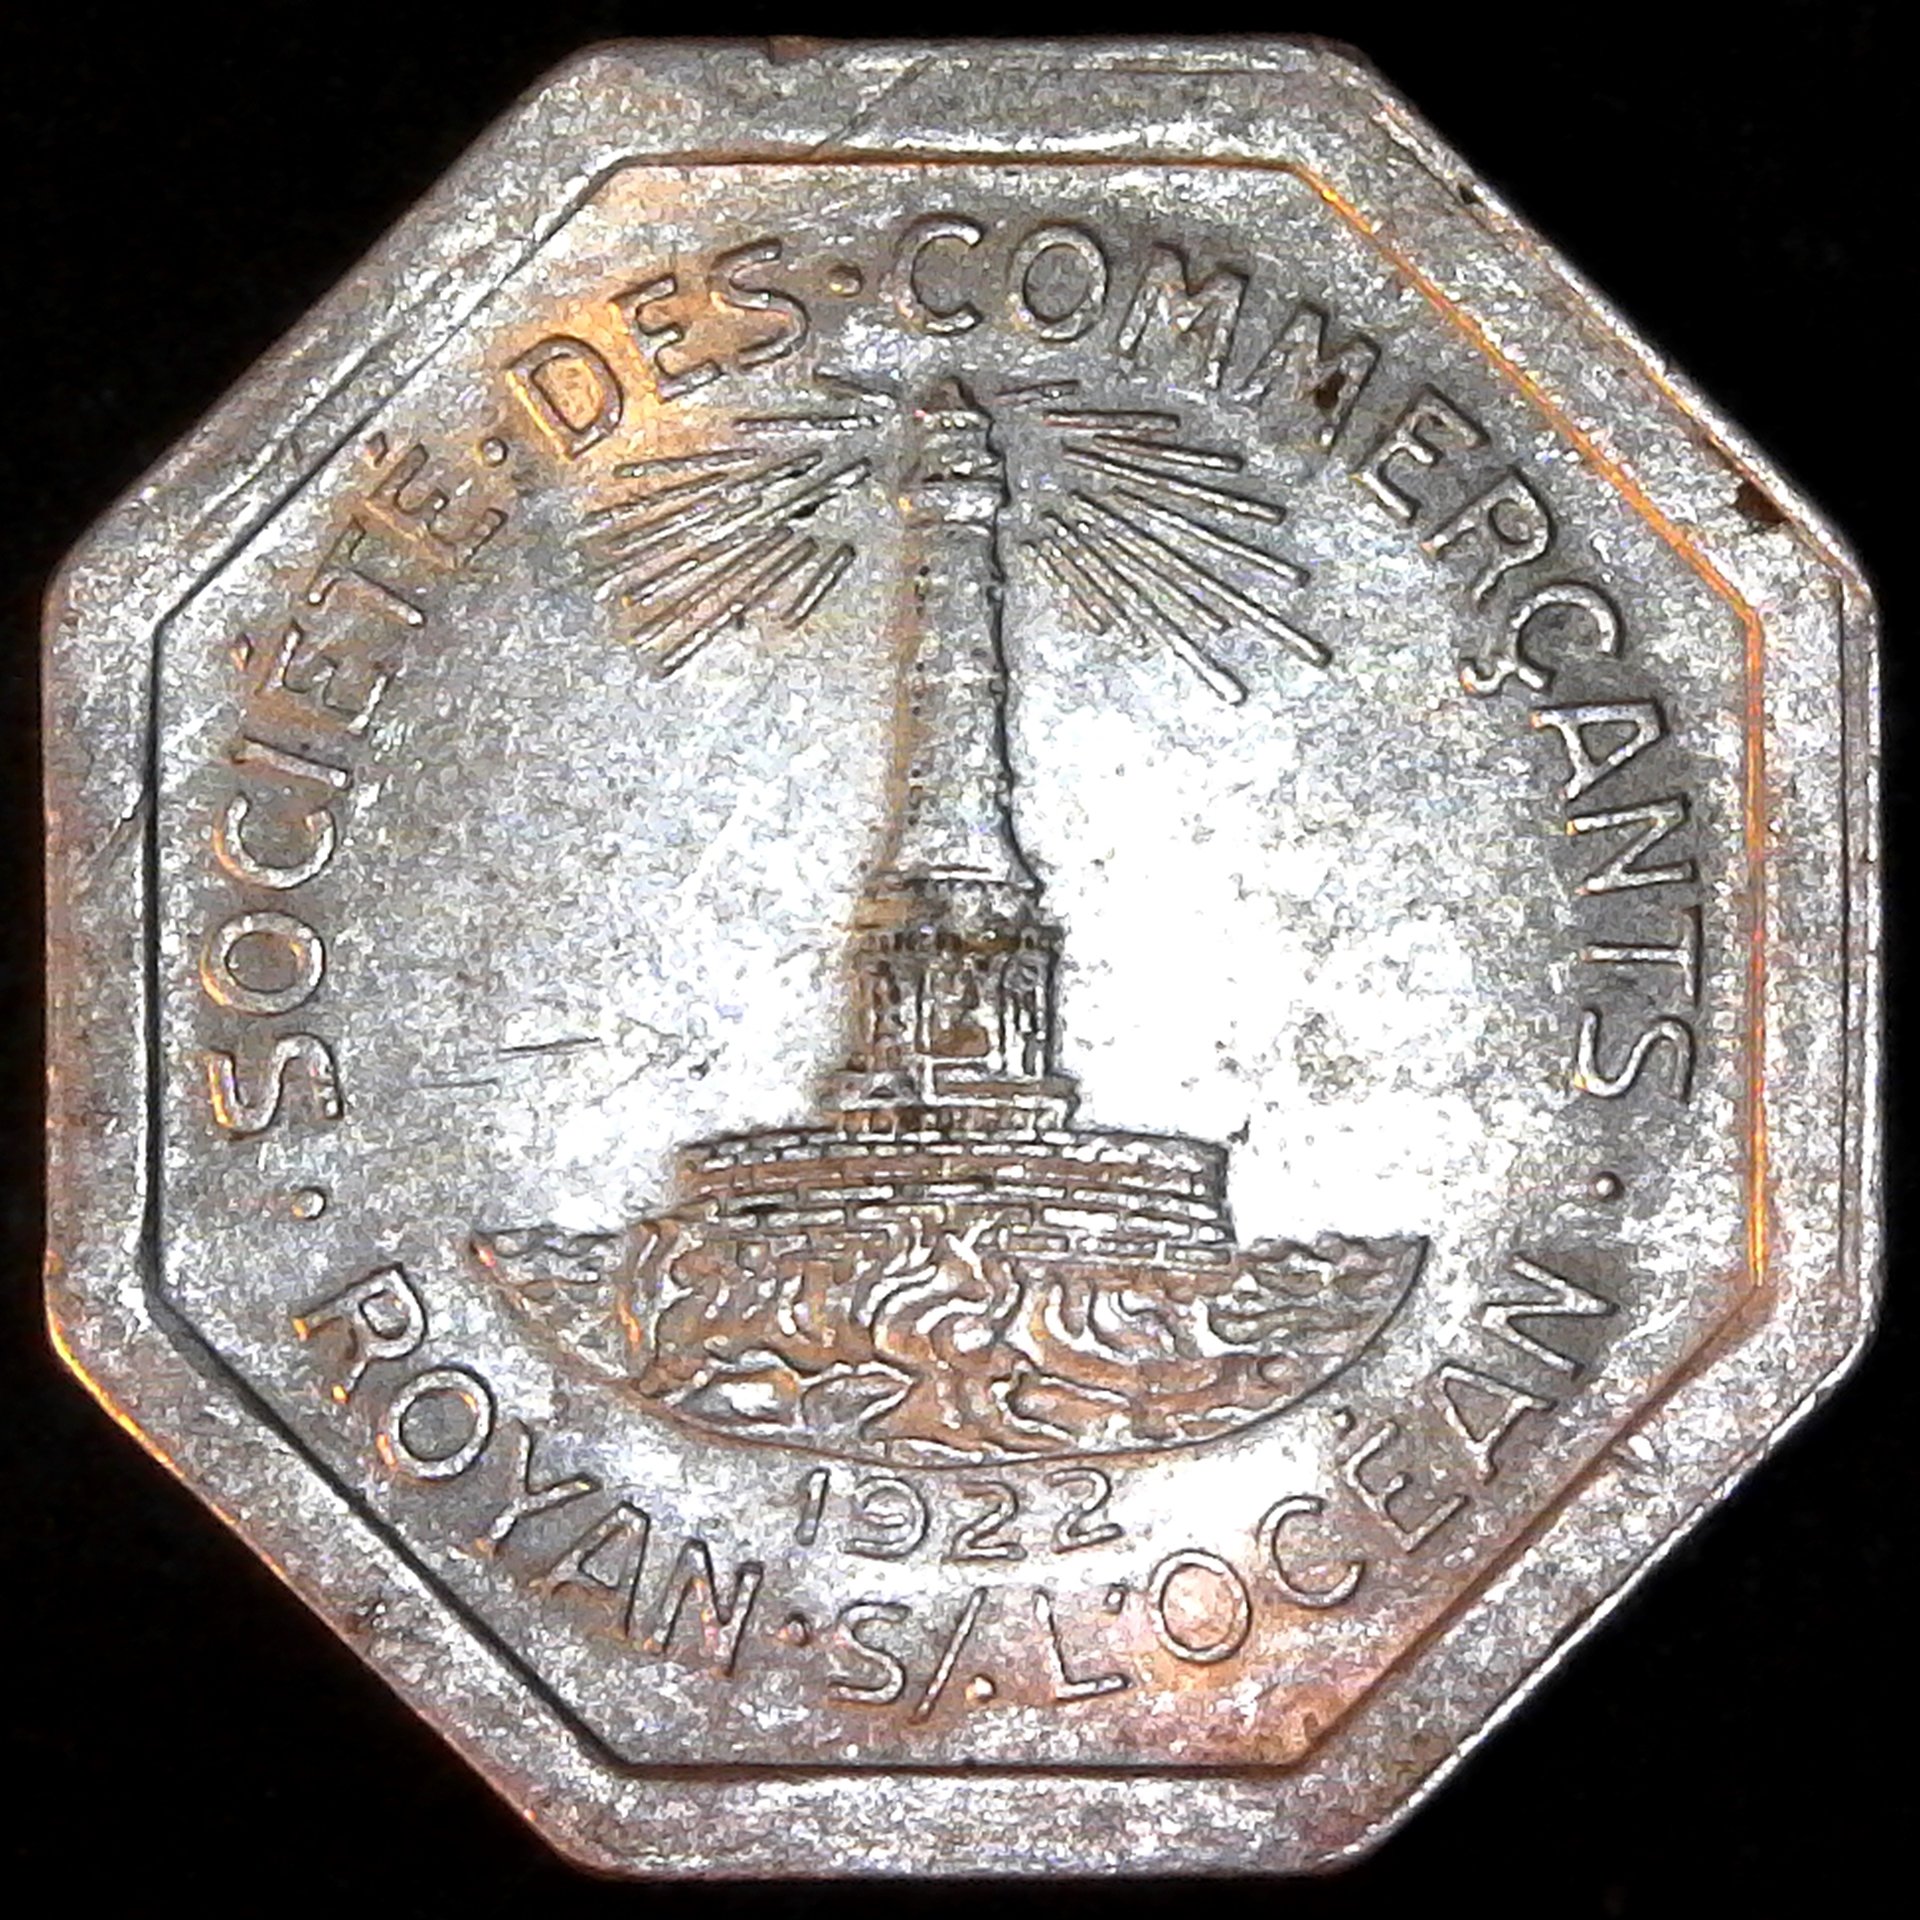 France Royan 25 cent 1922 obv.jpg